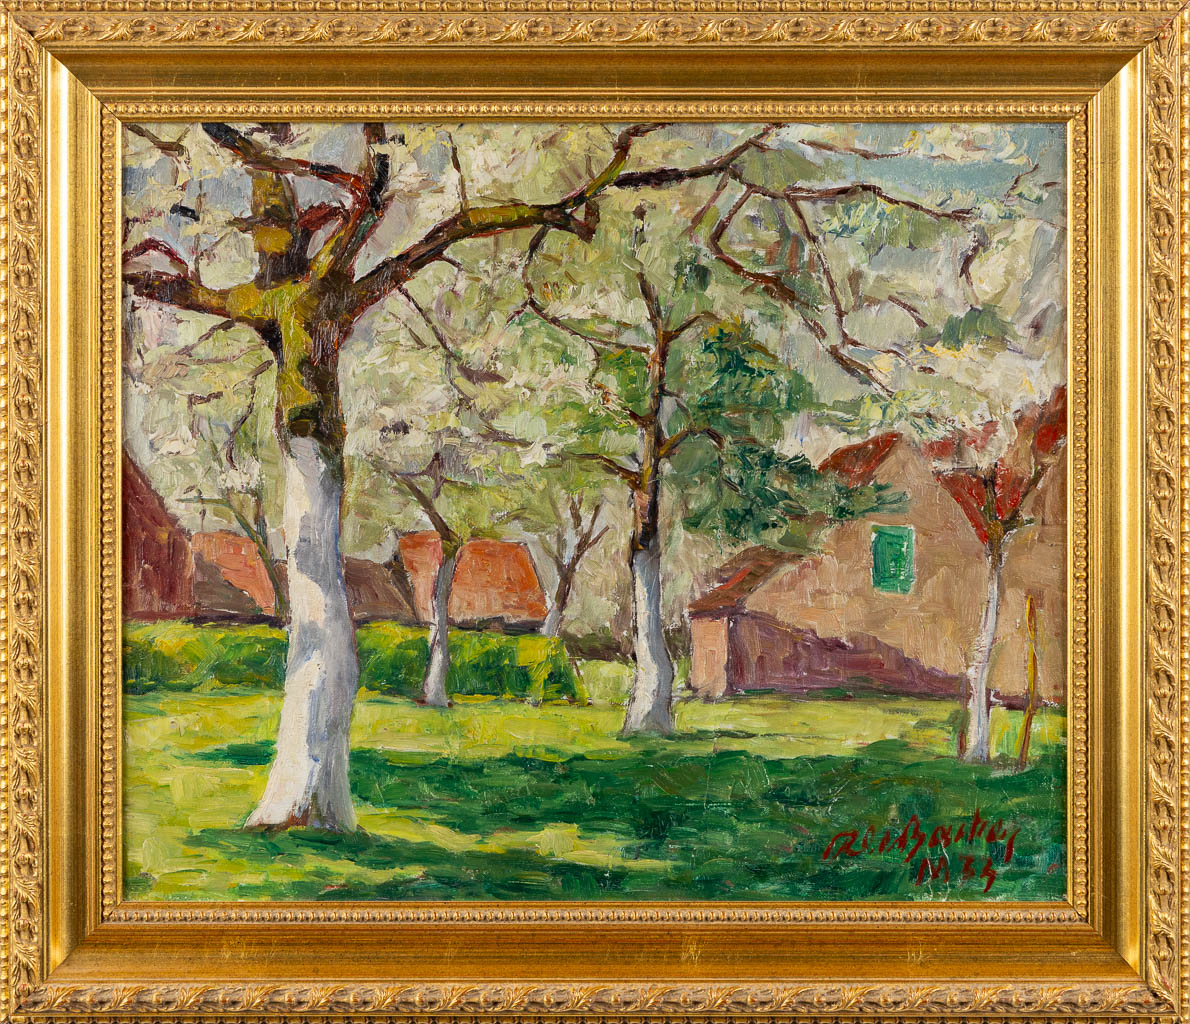 Roger DE BACKER (1897-1984) 'Lente' 1934. (W:60 x H:50 cm)